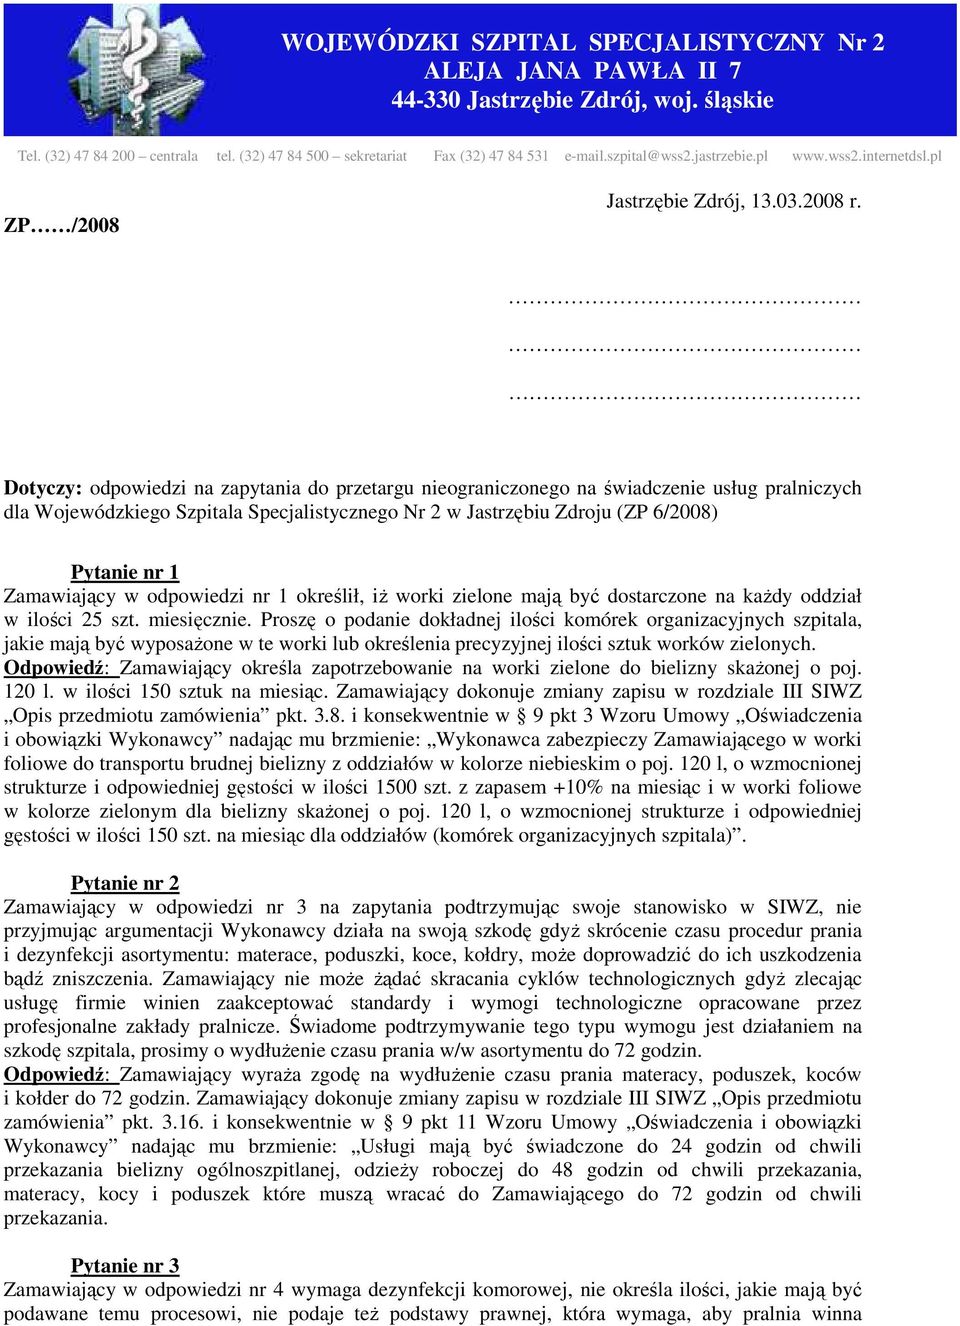 Dotyczy: odpowiedzi na zapytania do przetargu nieograniczonego na świadczenie usług pralniczych dla Wojewódzkiego Szpitala Specjalistycznego Nr 2 w Jastrzębiu Zdroju (ZP 6/2008) Pytanie nr 1